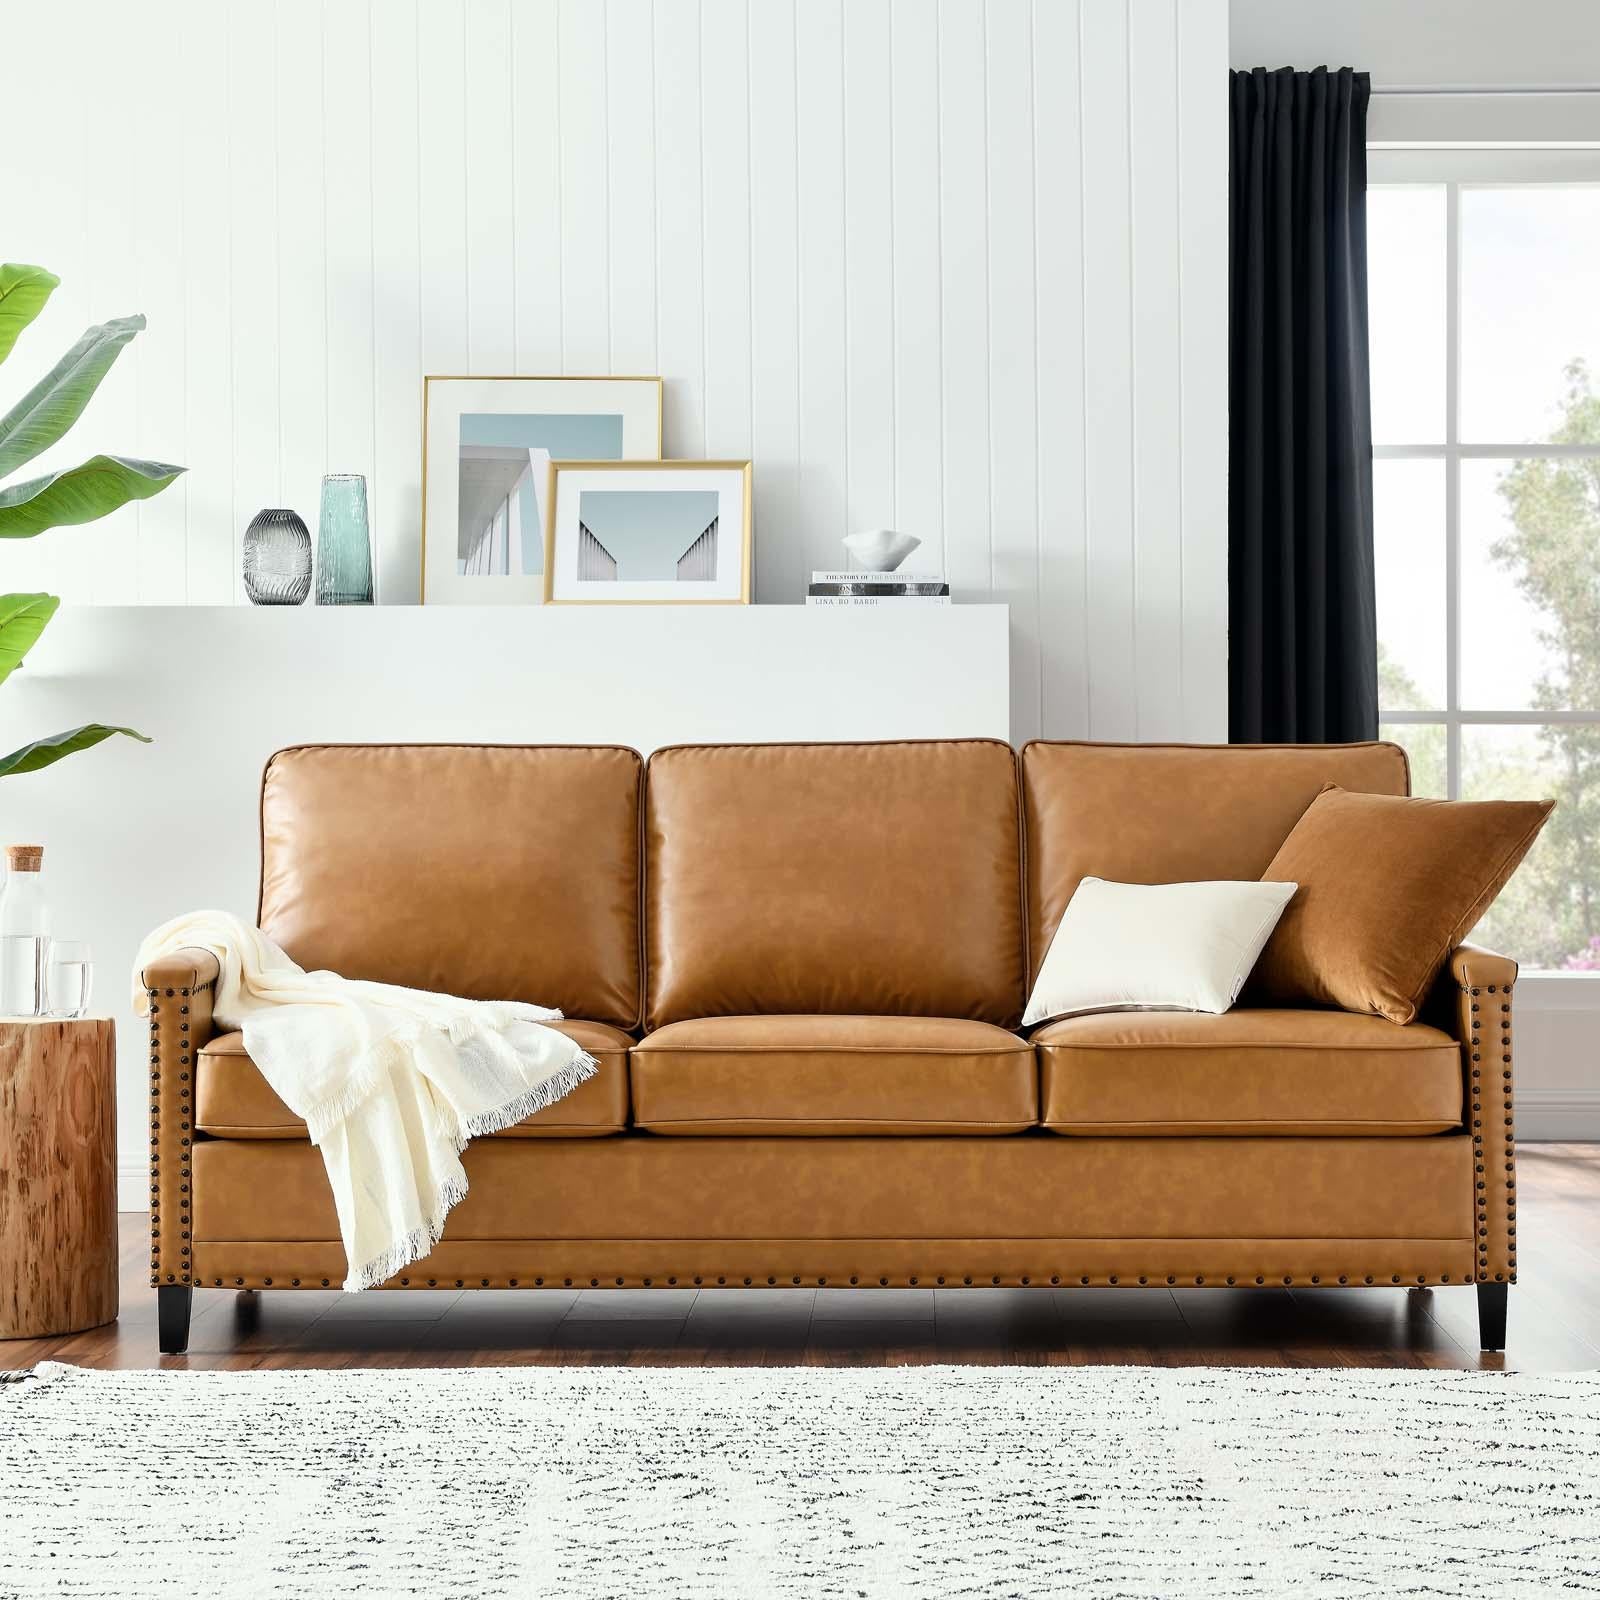 Modway Furniture Modern Ashton Vegan Leather Sofa - EEI-4984